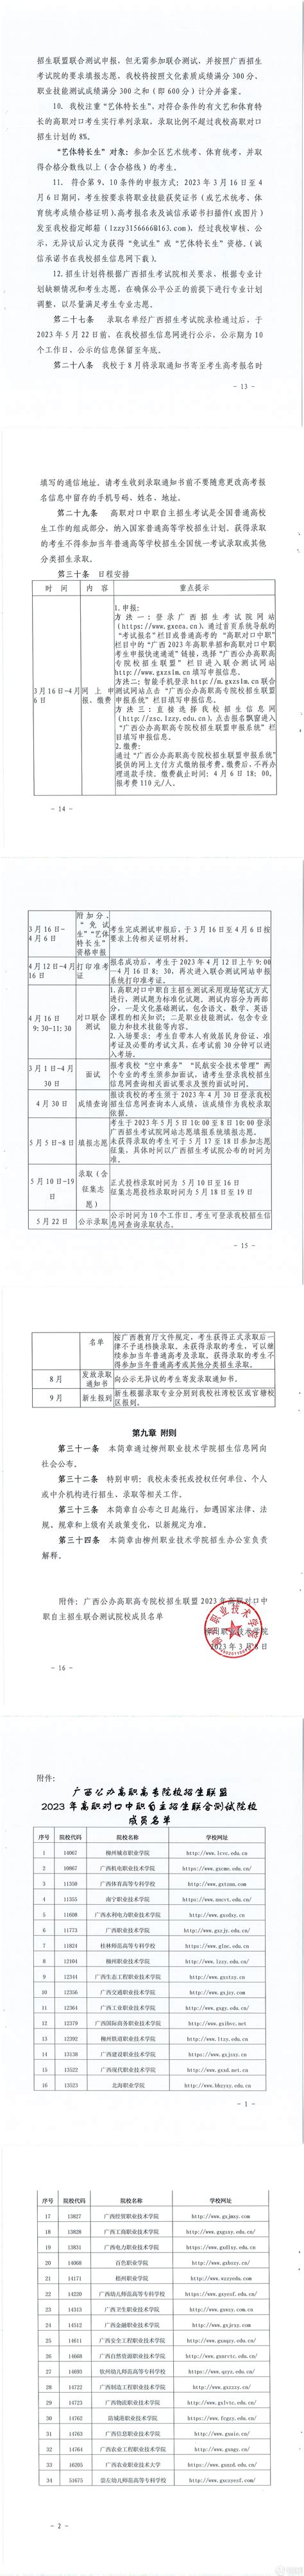 柳州职业技术学院2016年招生计划表_广西八桂职教网--有职教的地方就有我们!